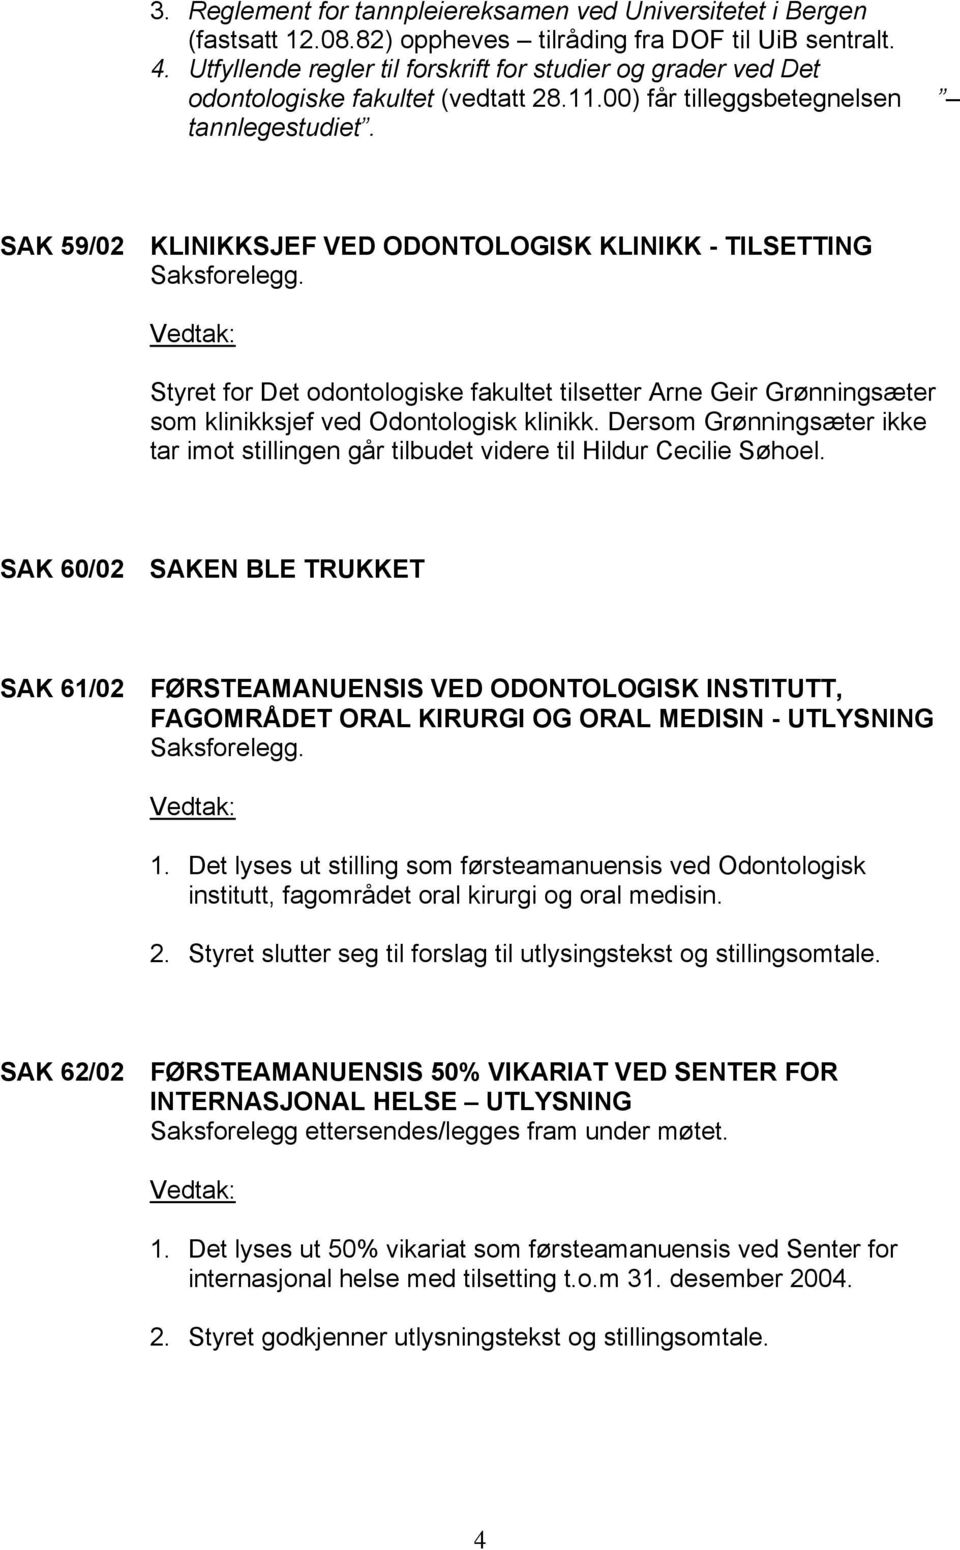 SAK 59/02 KLINIKKSJEF VED ODONTOLOGISK KLINIKK - TILSETTING Styret for Det odontologiske fakultet tilsetter Arne Geir Grønningsæter som klinikksjef ved Odontologisk klinikk.